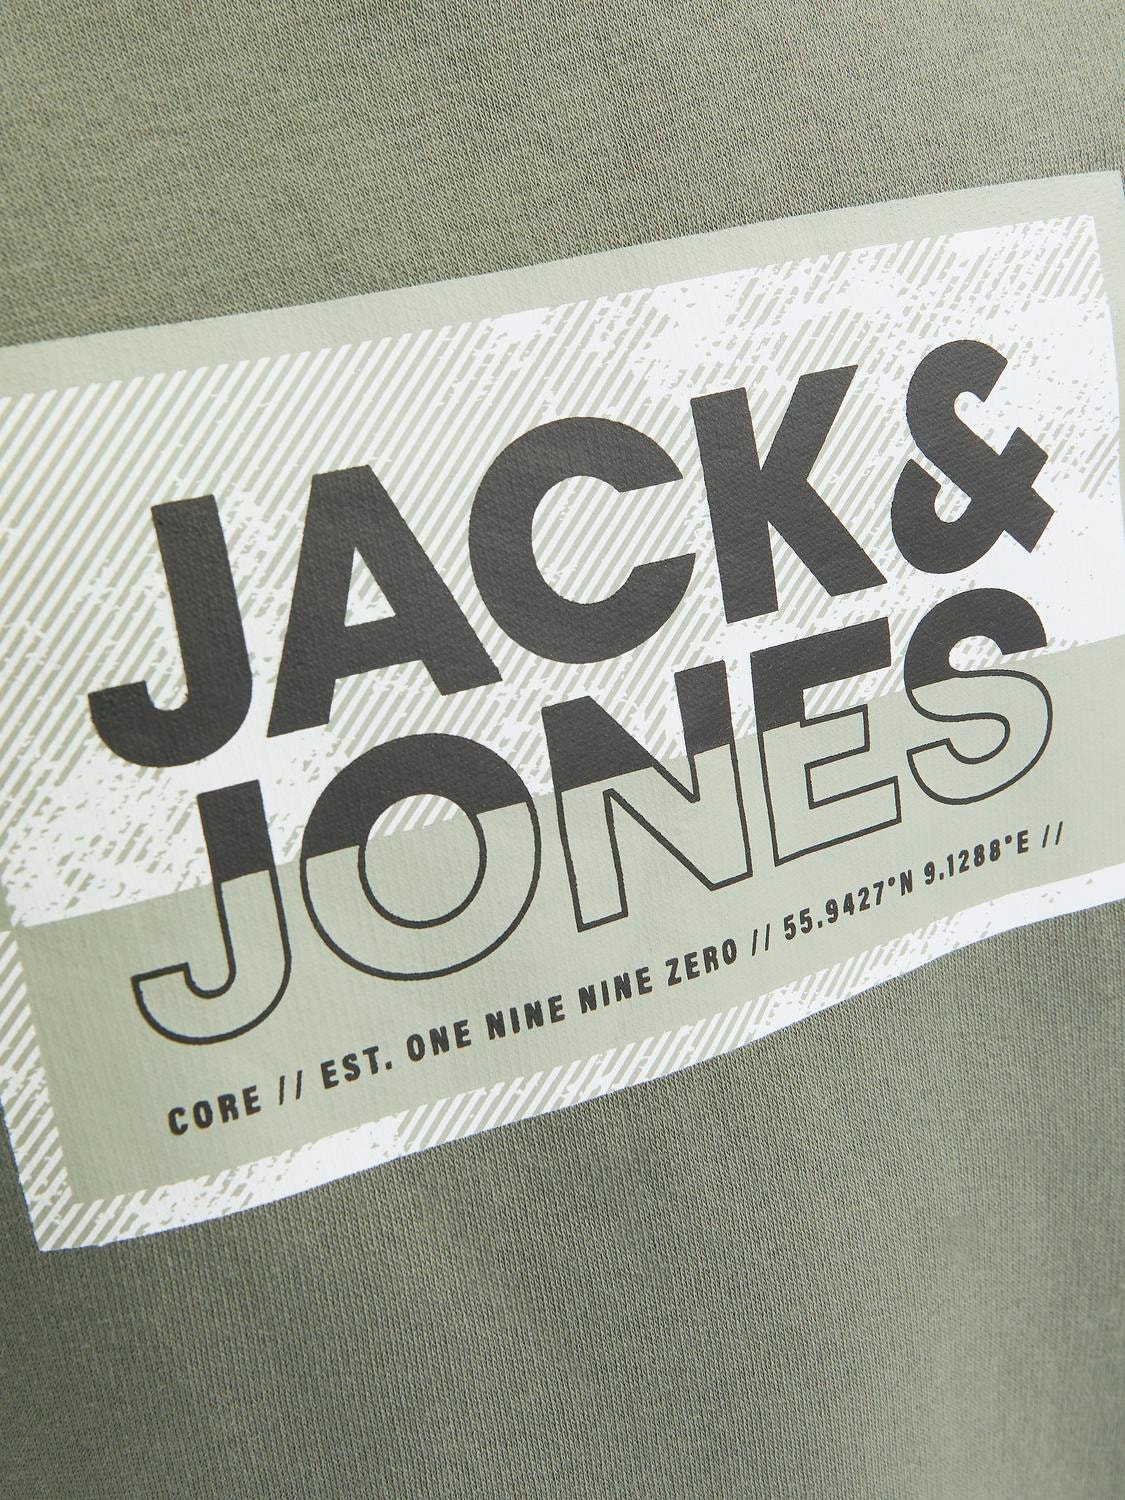 Jack & Jones Potištěný Mikina s kulatým výstřihem Junior -Agave Green - 12257439